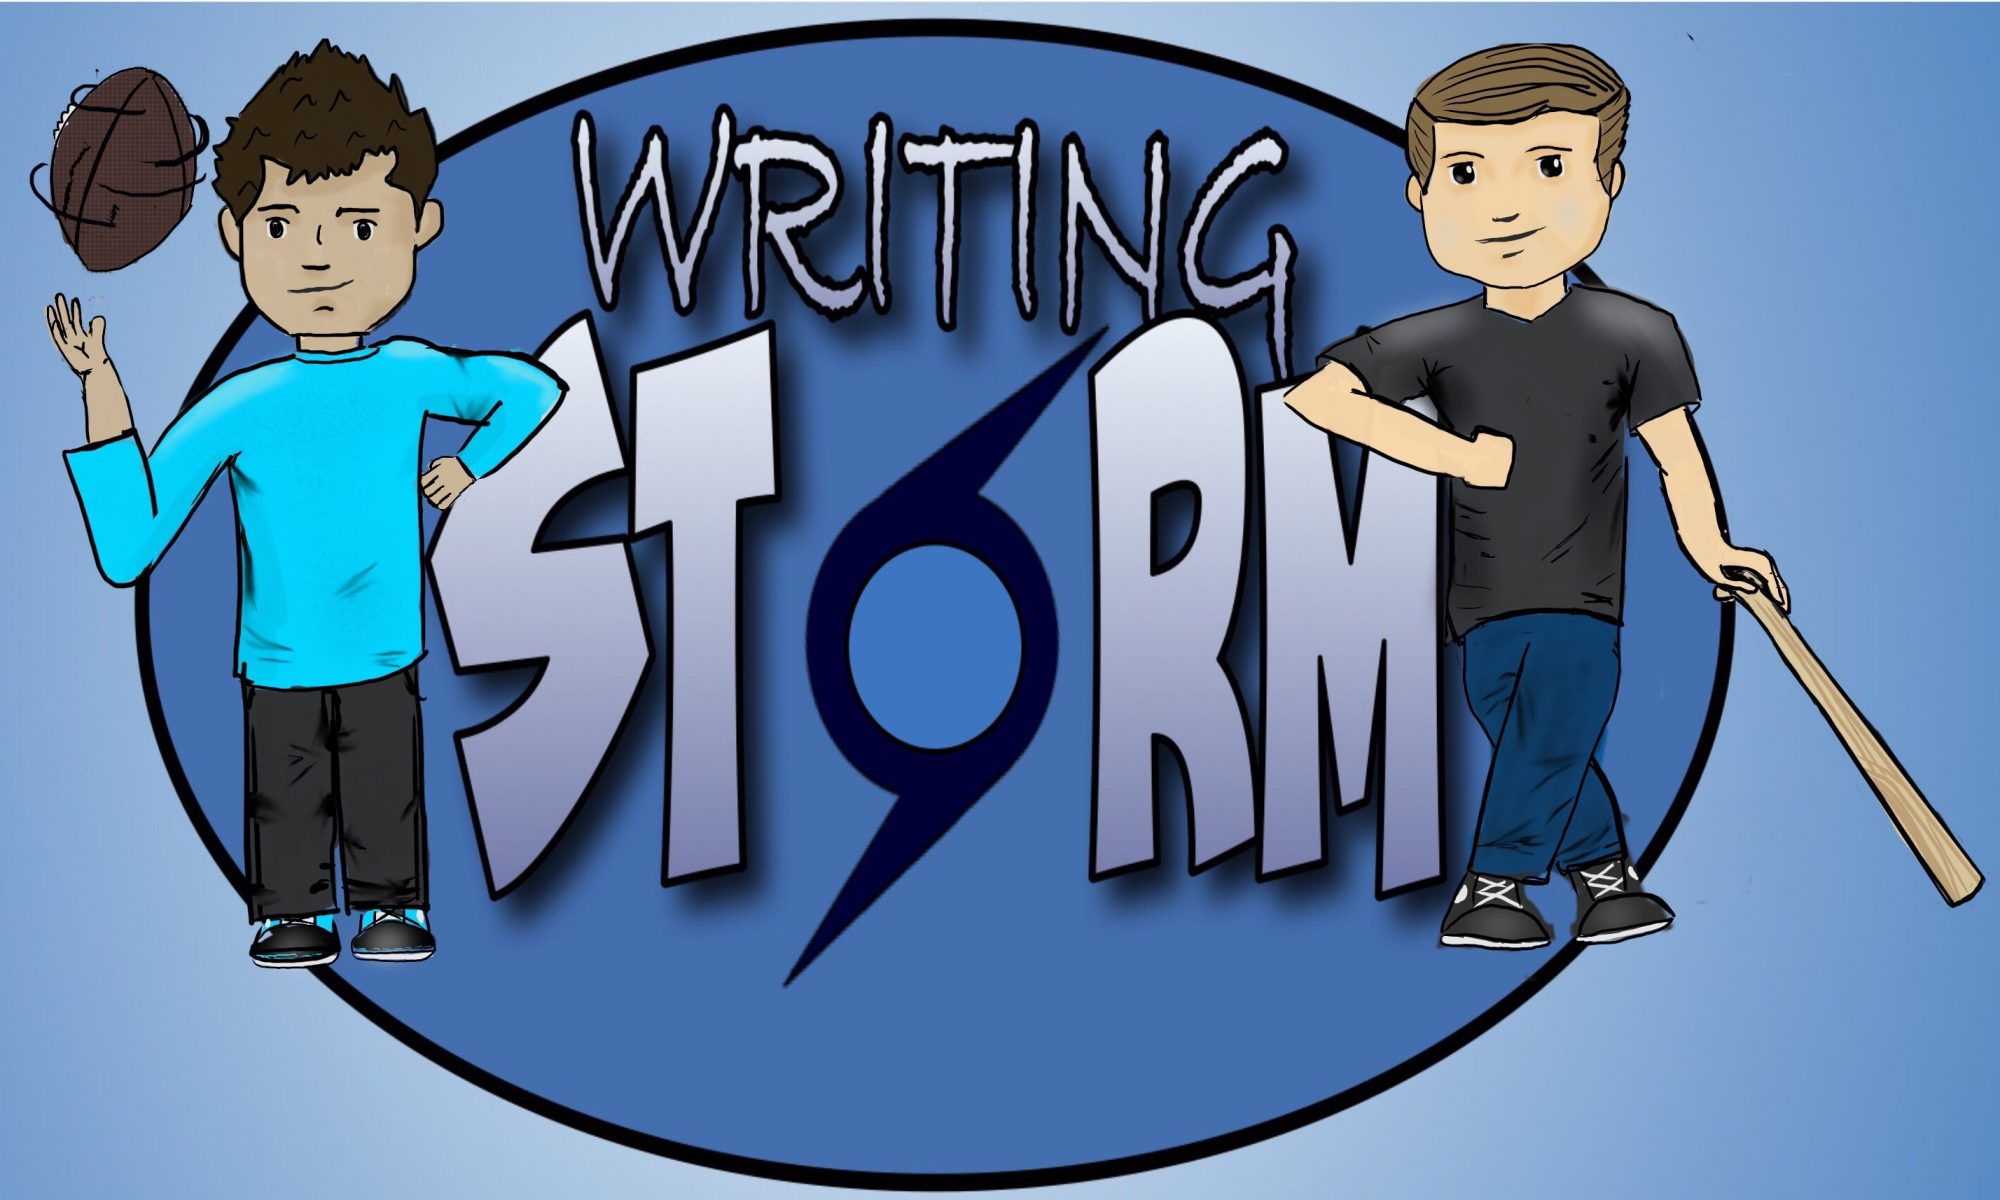 WritingStorm